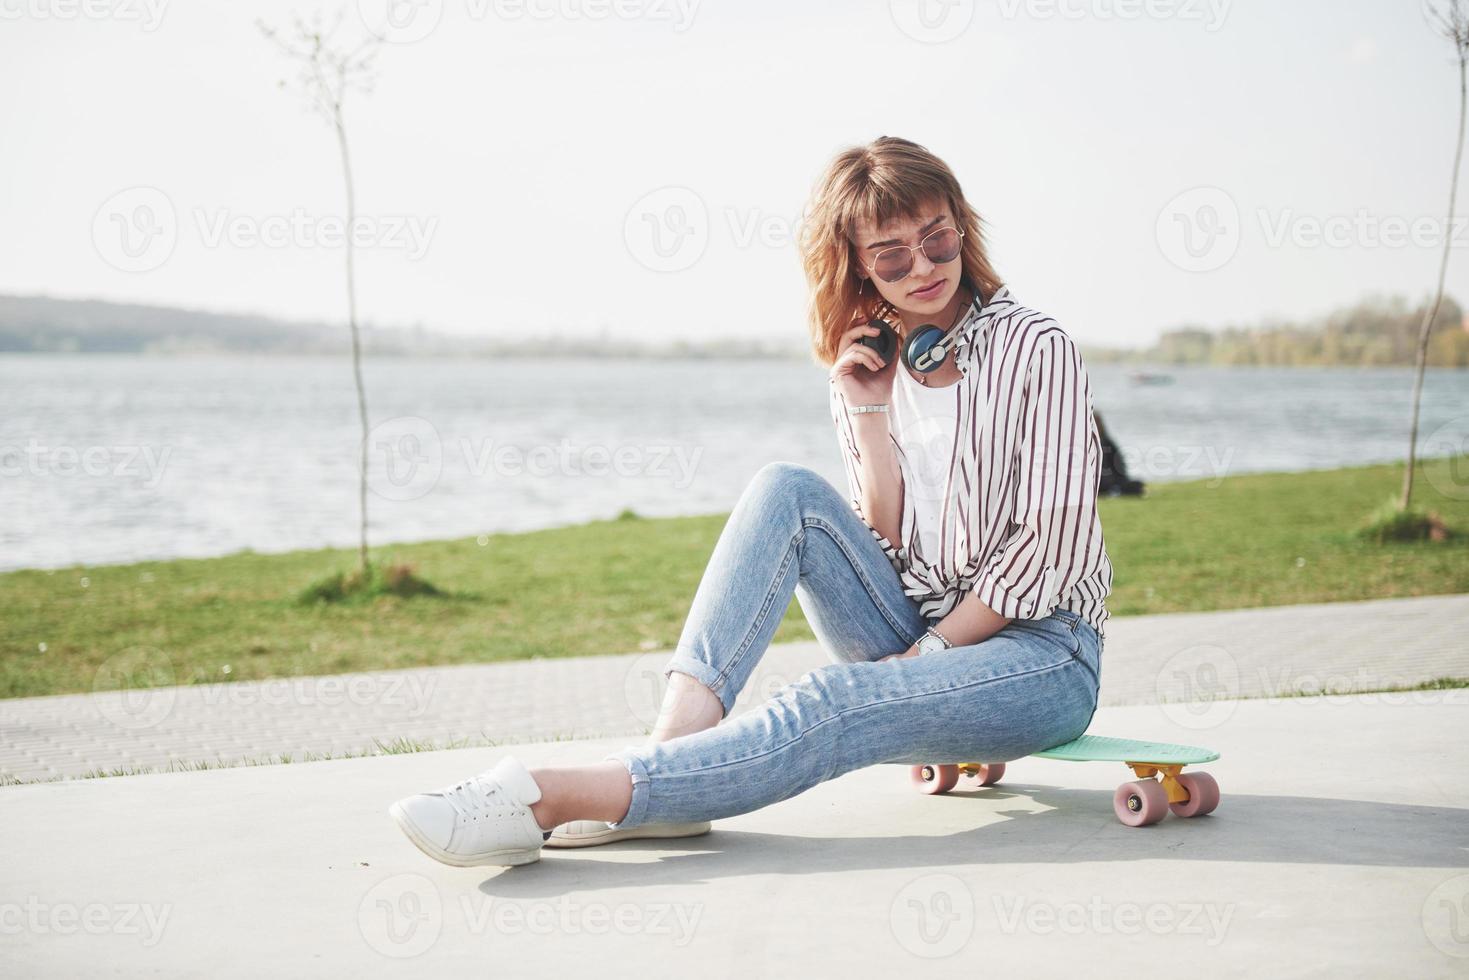 une belle jeune fille s'amuse dans le parc et fait du skateboard photo